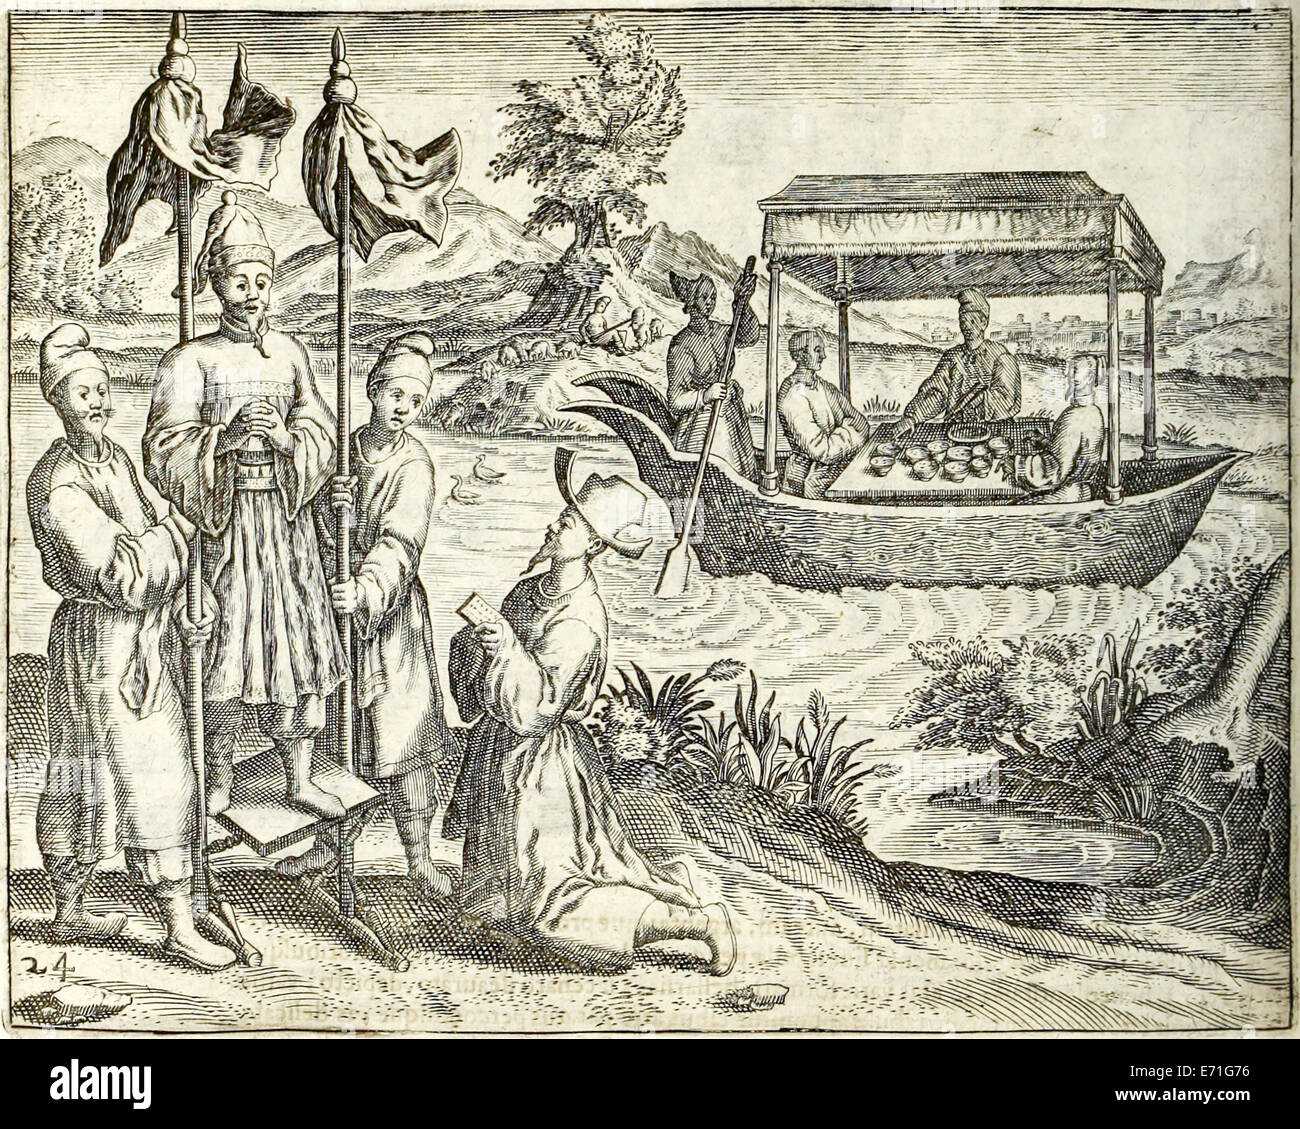 Szene in China, von "Indiae Orientalis' 1599 von Theodor de Bry. Siehe Beschreibung für weitere Informationen. Stockfoto